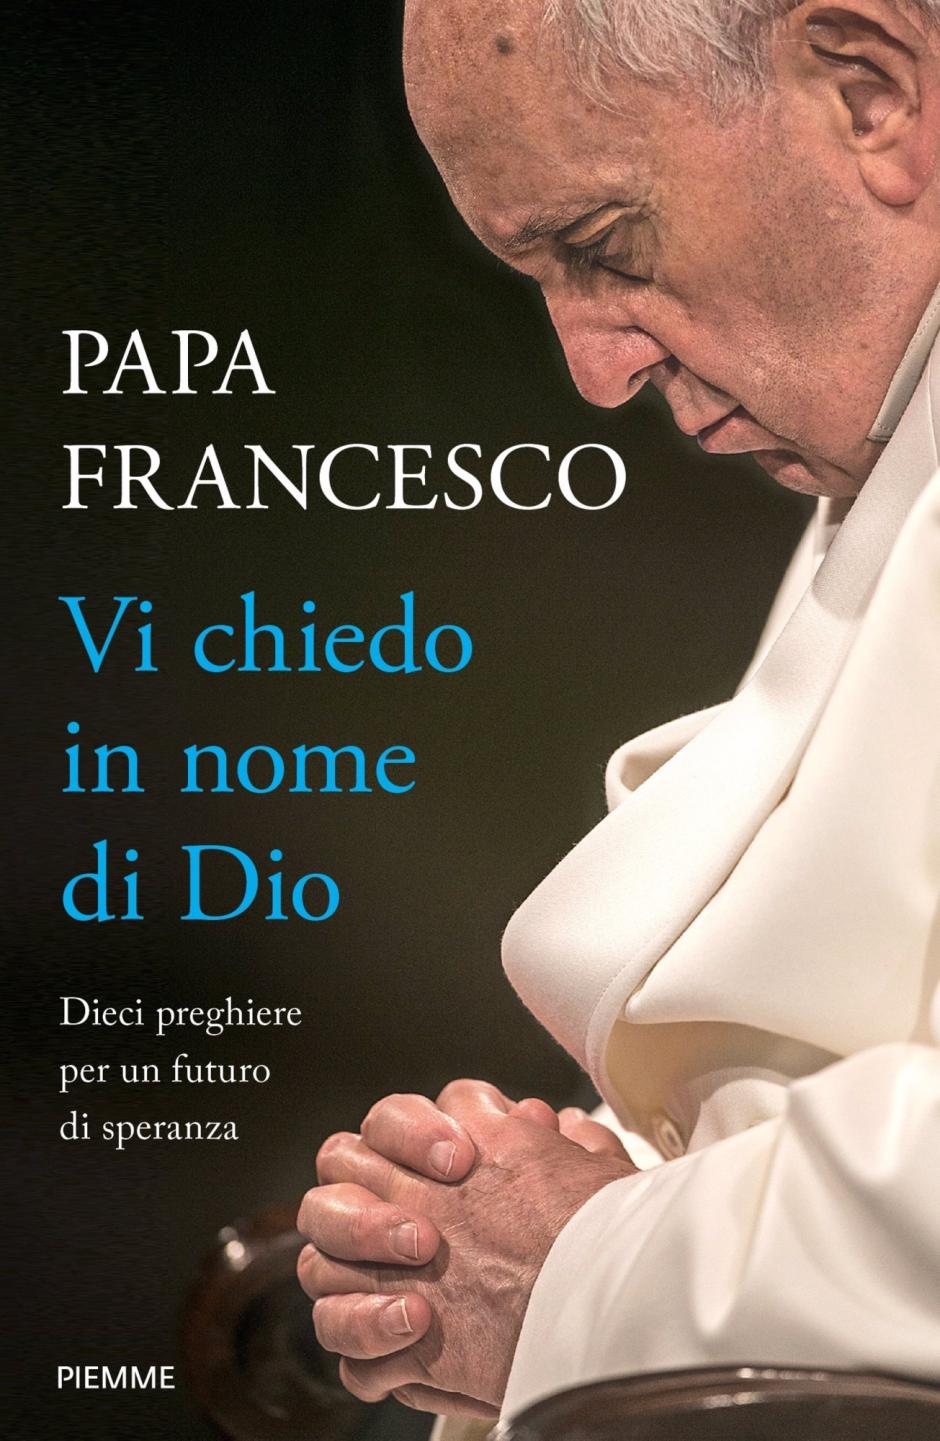 Portada del nuevo libro del Papa Francisco